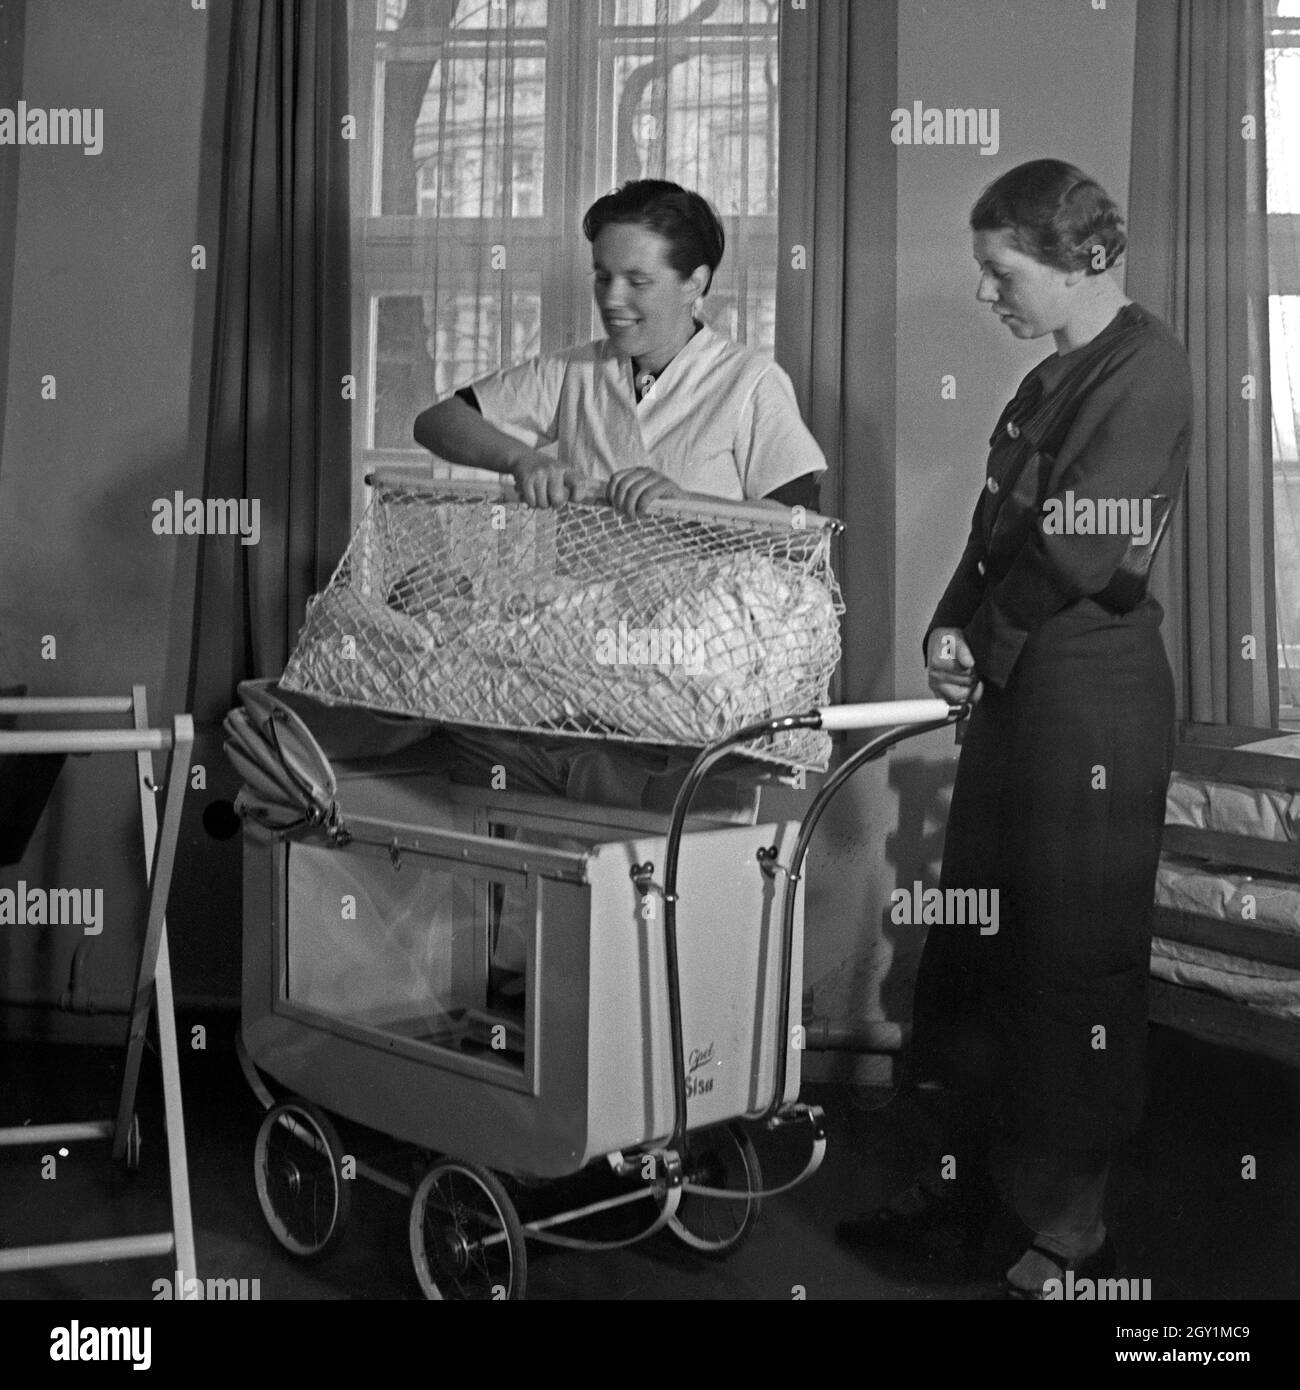 Frauen nehmen eine einer Mütterschulung des Reichsmütterdienstes in Essen teil, Deutschland 1930er Jahre. Frauen Particpating in einer Mutter Ausbildung der Reichsmuetterdienst in Essen, Deutschland 1930. Stockfoto